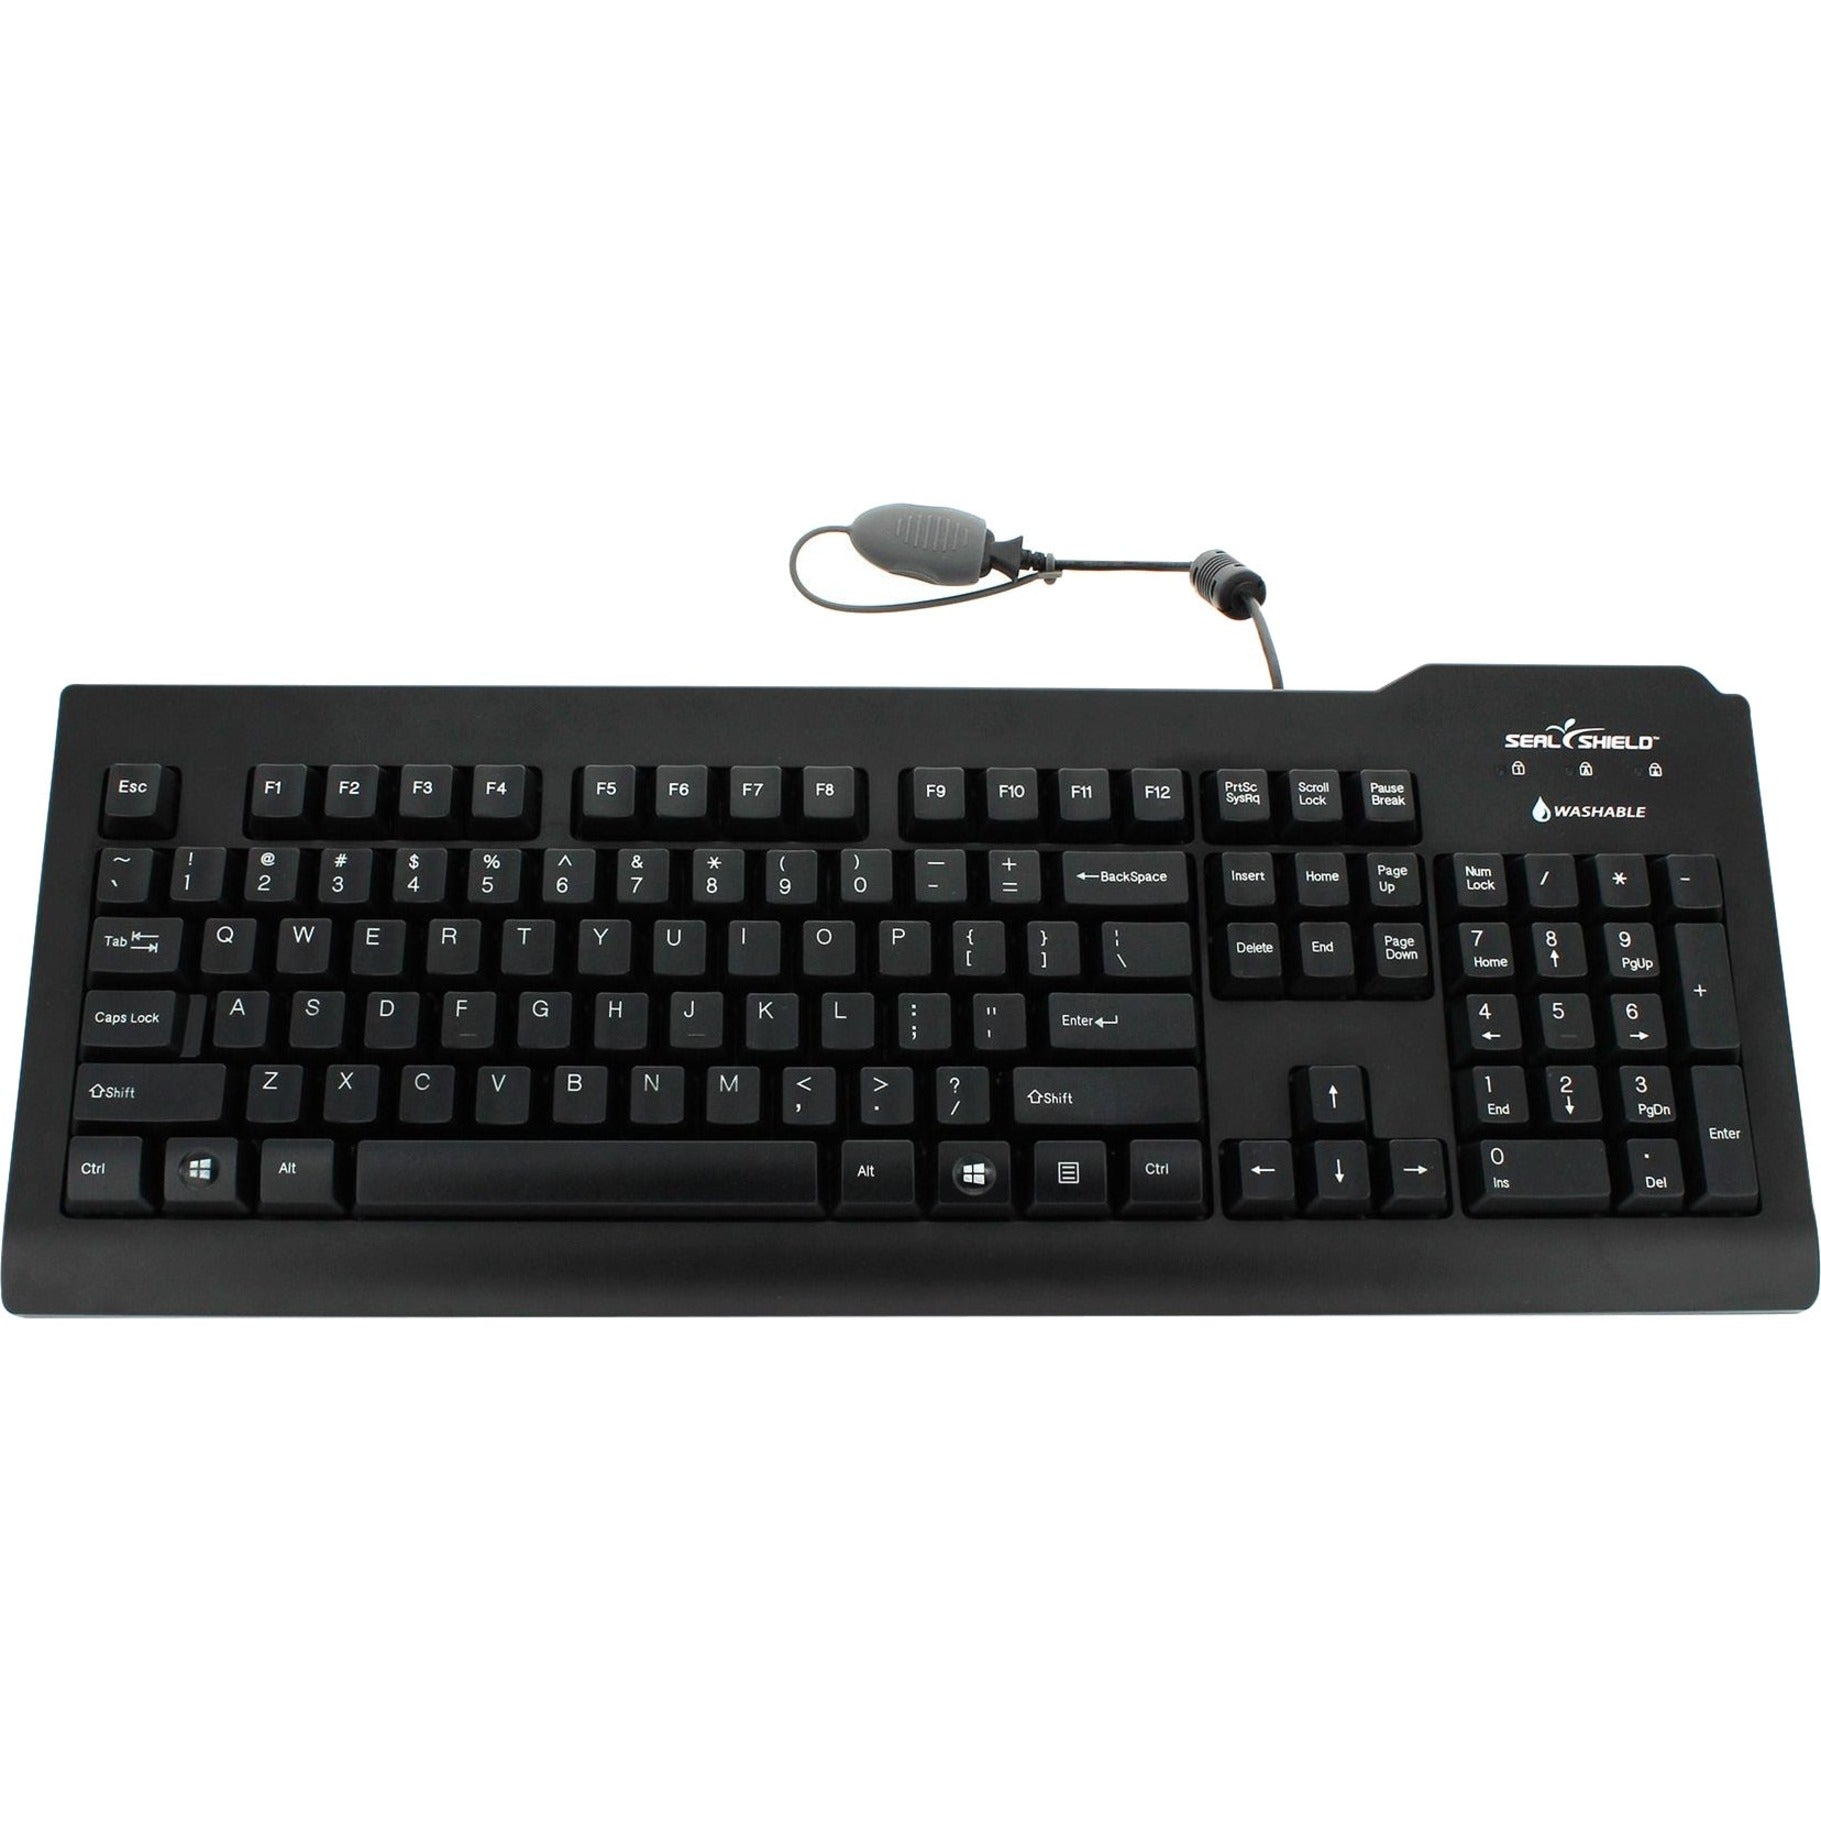 Seal Shield SSKSV207 Silver Seal Waterproof Keyboard, Lifetime Warranty, USB Connectivity